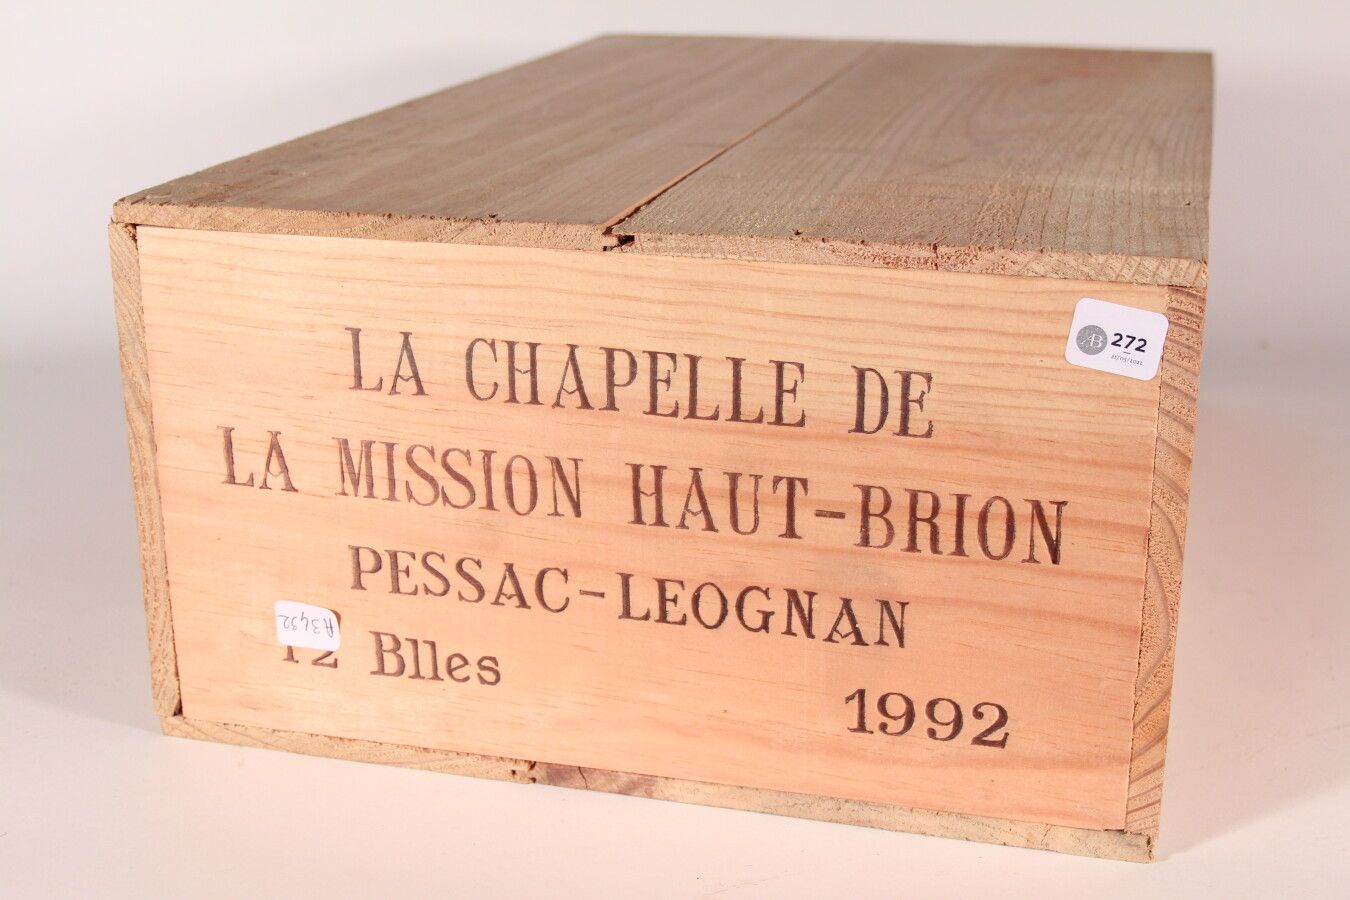 Null 1992 - La Chapelle de la Mission Haut Brion

Pessac-Léognan Rouge - 12 blle&hellip;